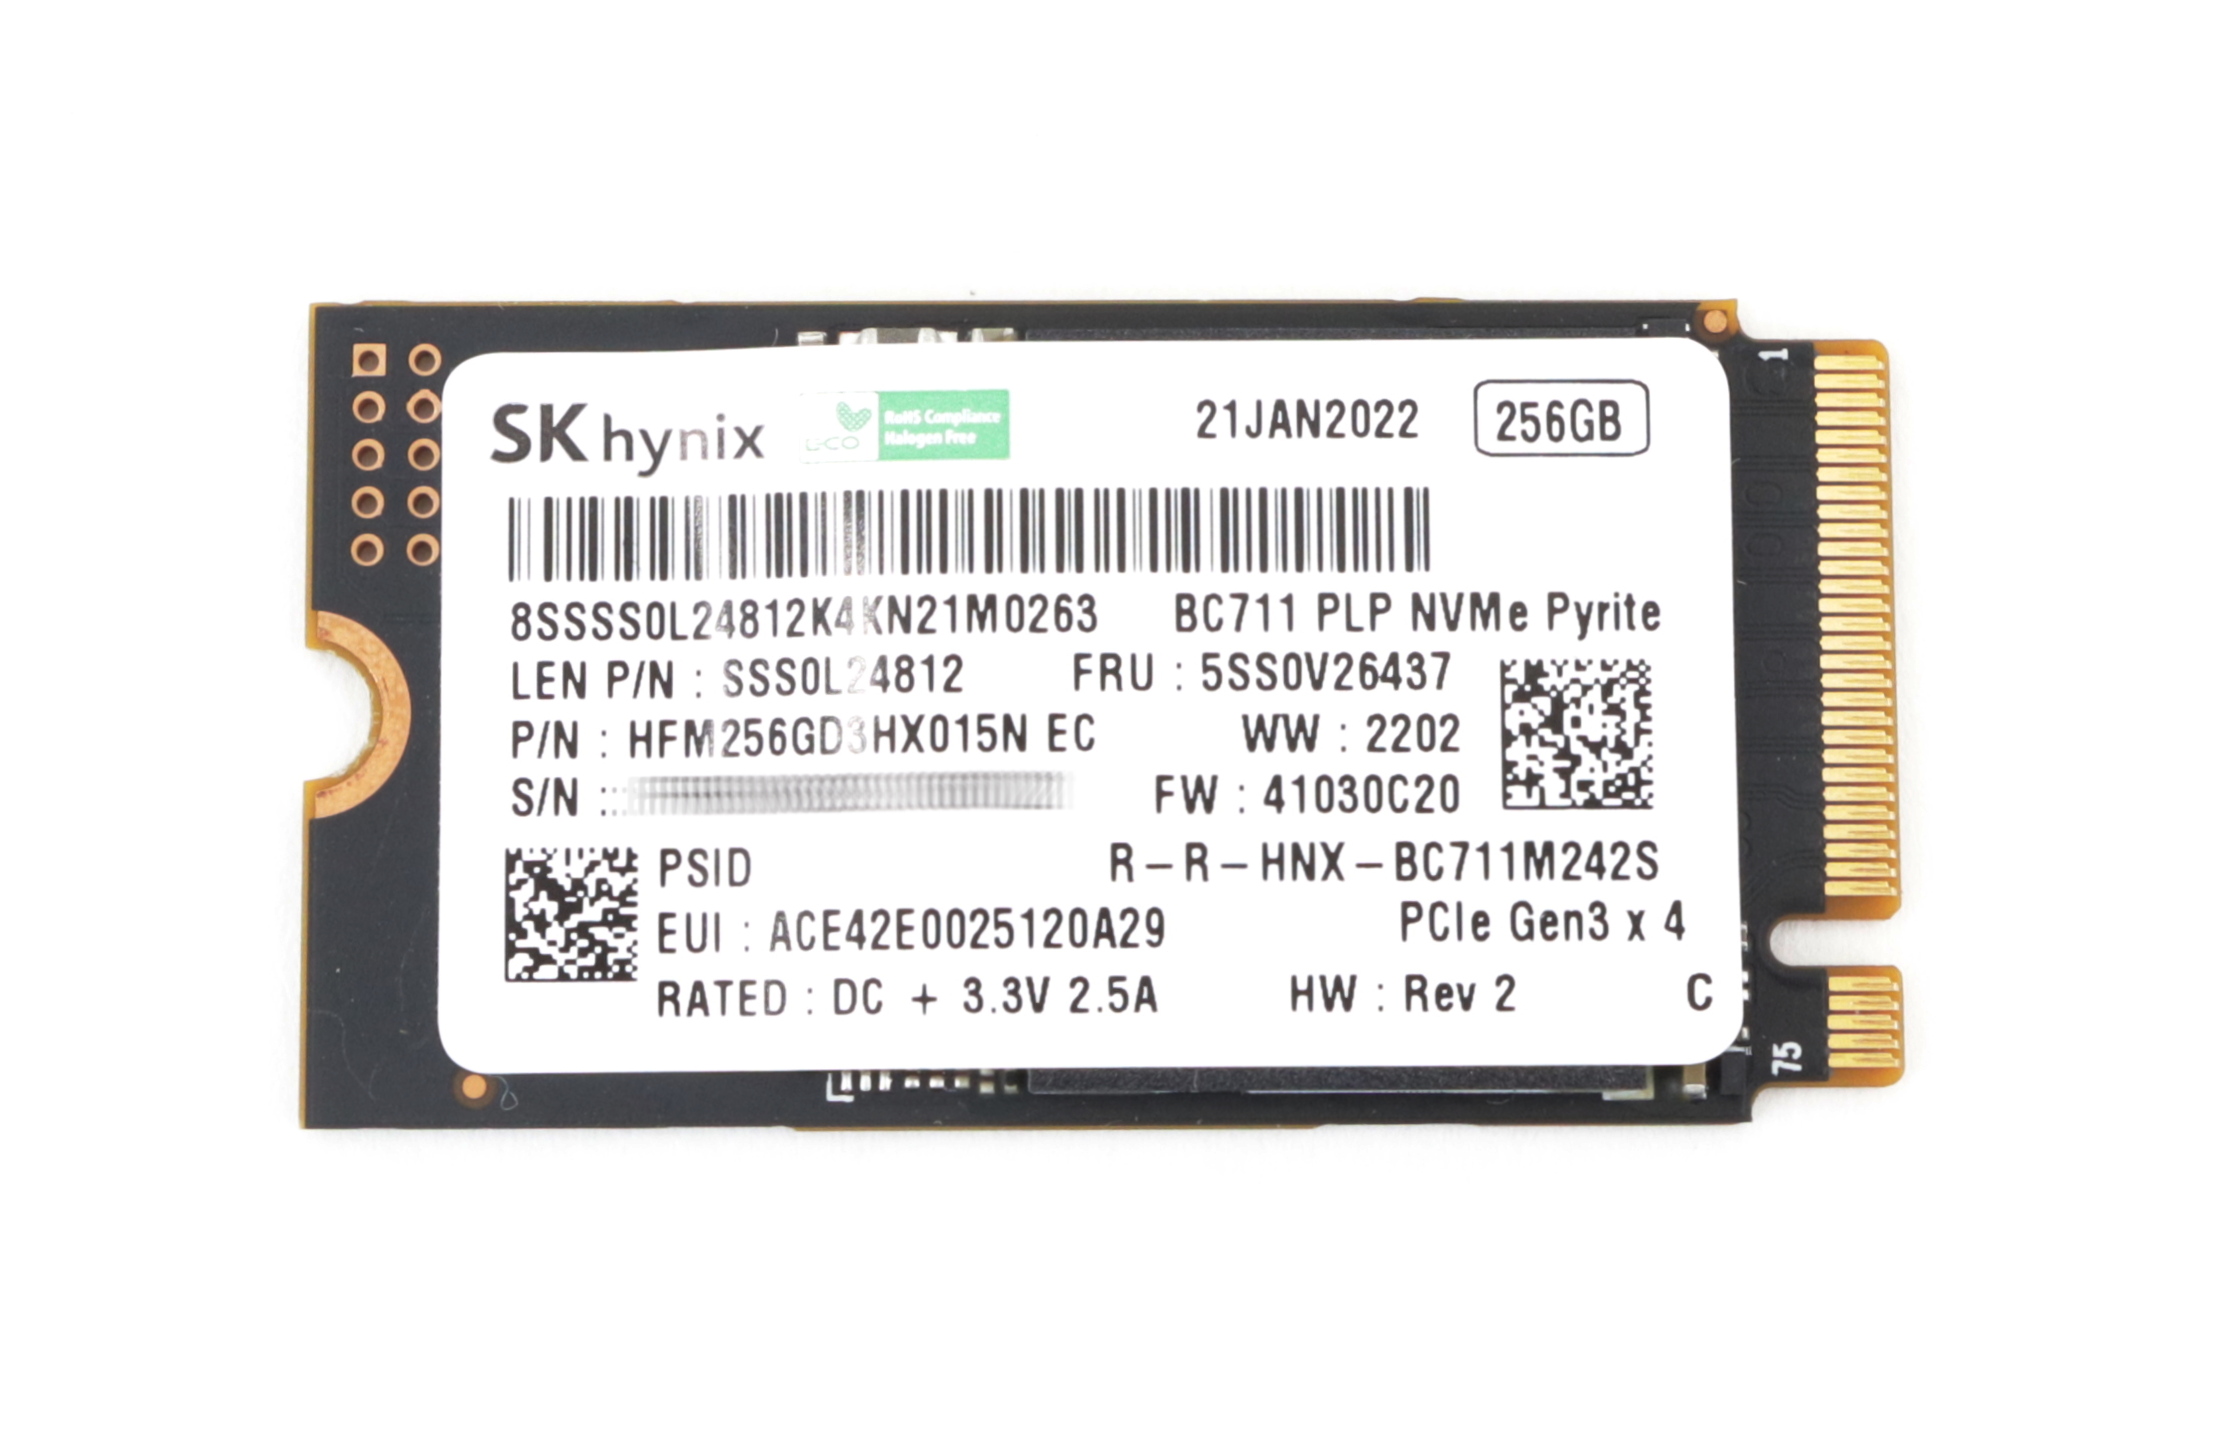 Hynix GC711 256GB HFM256GD3HX015N SSD M.2 NVMe PCIe Gen3 x4 5SS0V26437